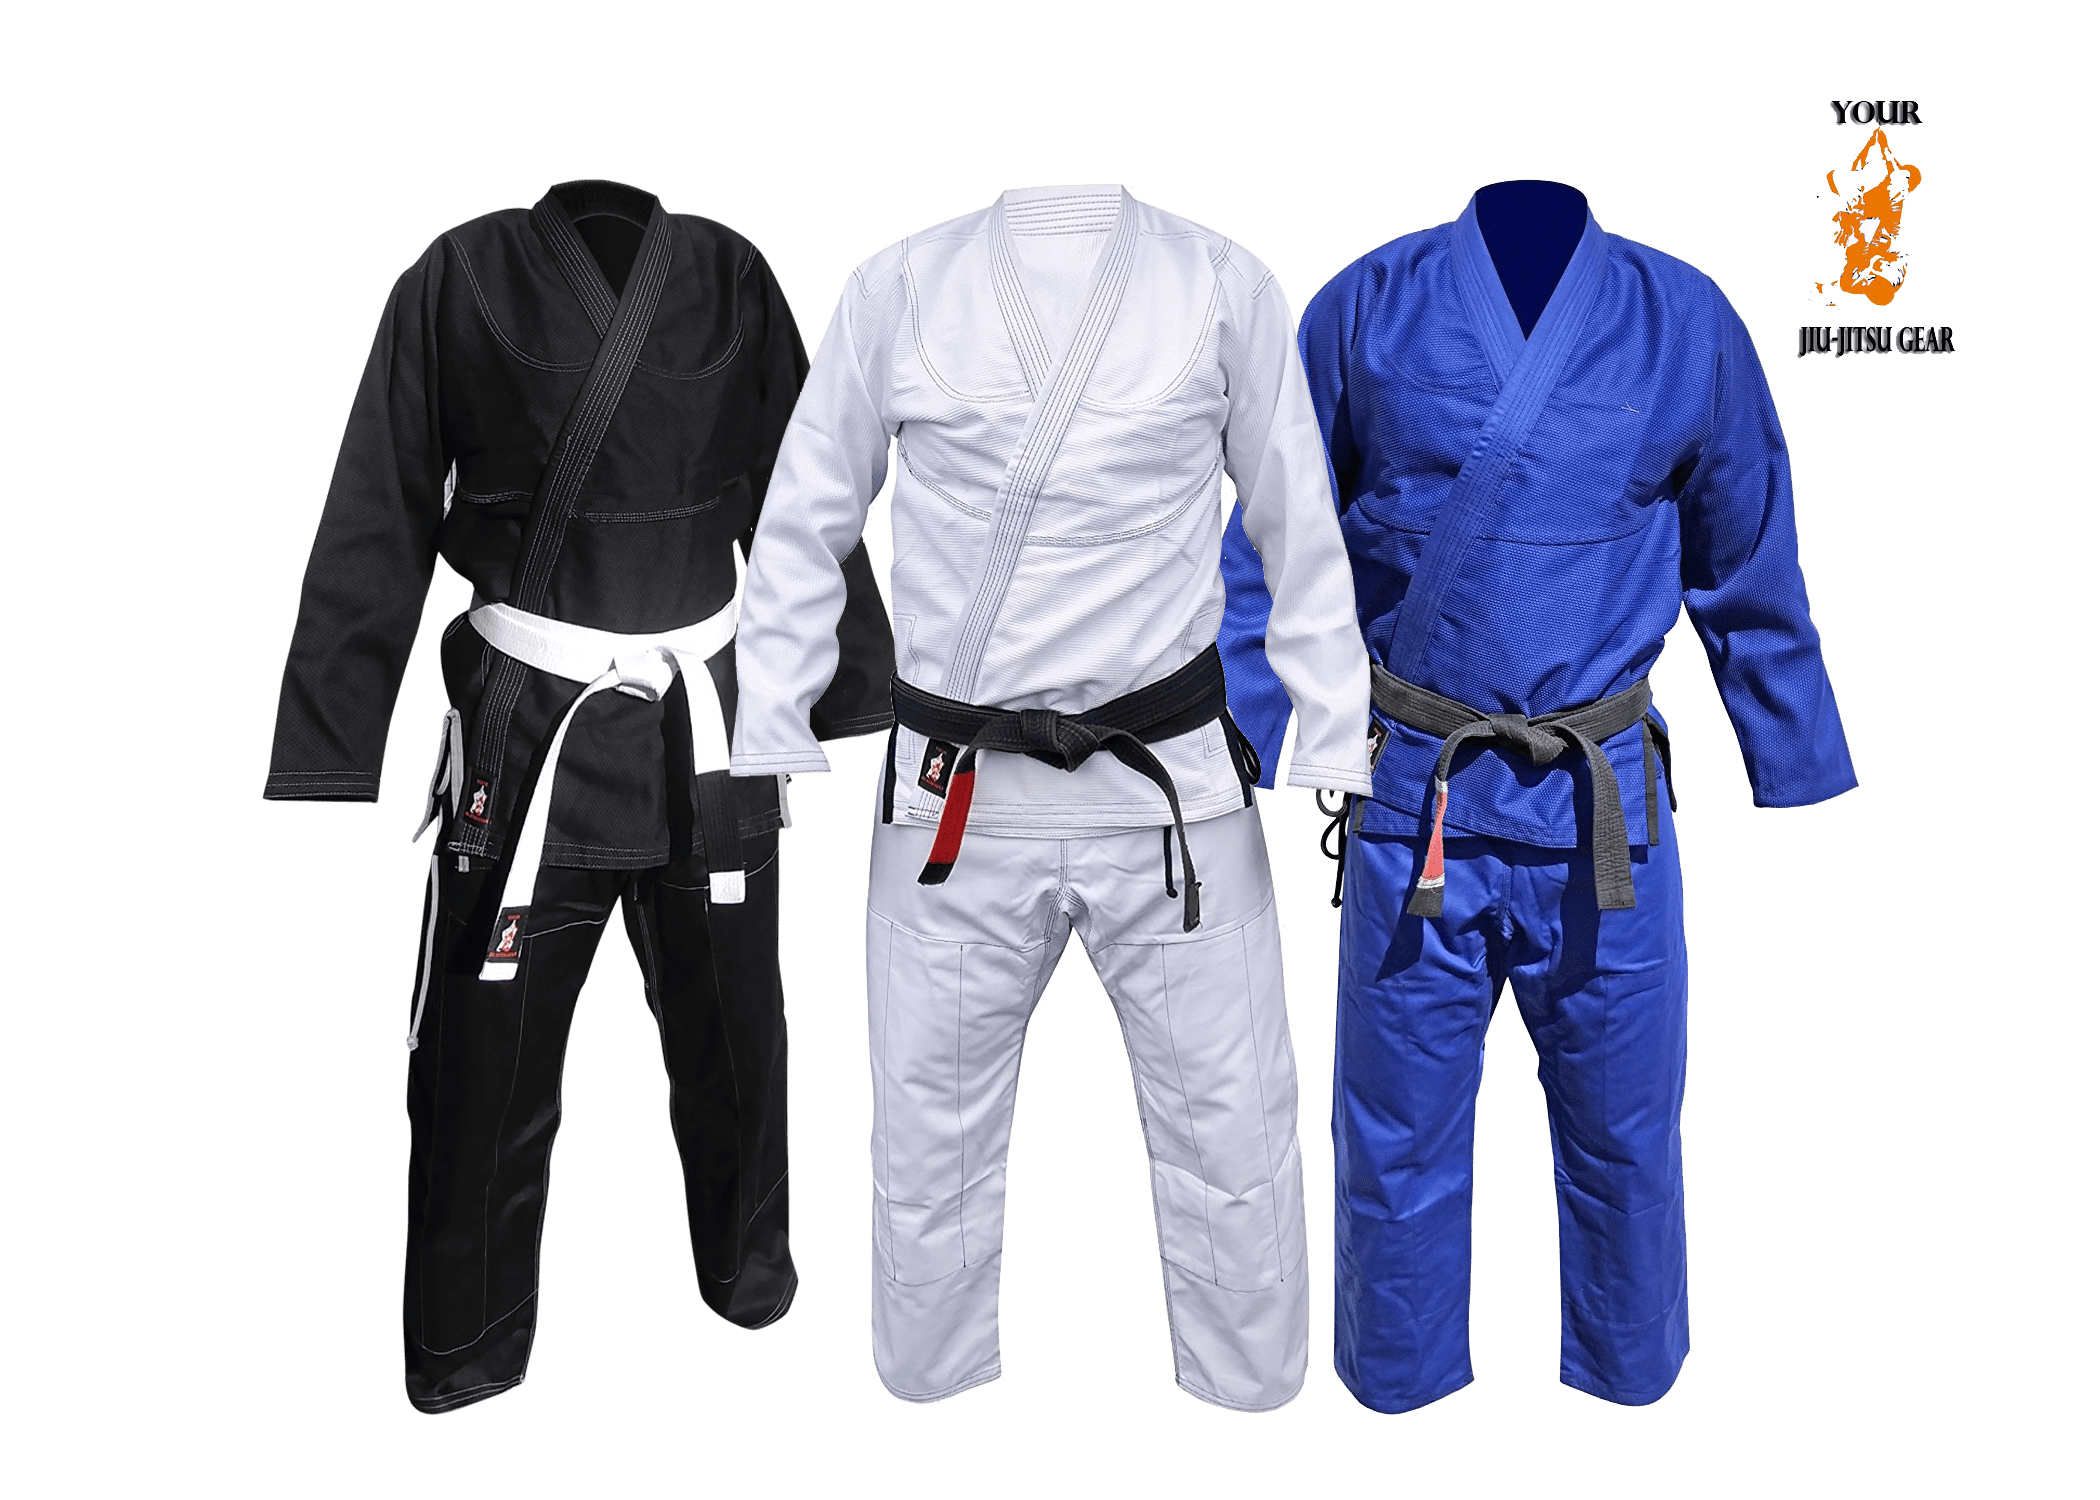 Details about   ATAMA Jiu-Jitsu Gi Brazilian Competition Fight Uniform jiujitsu Belt Judo BJJ 